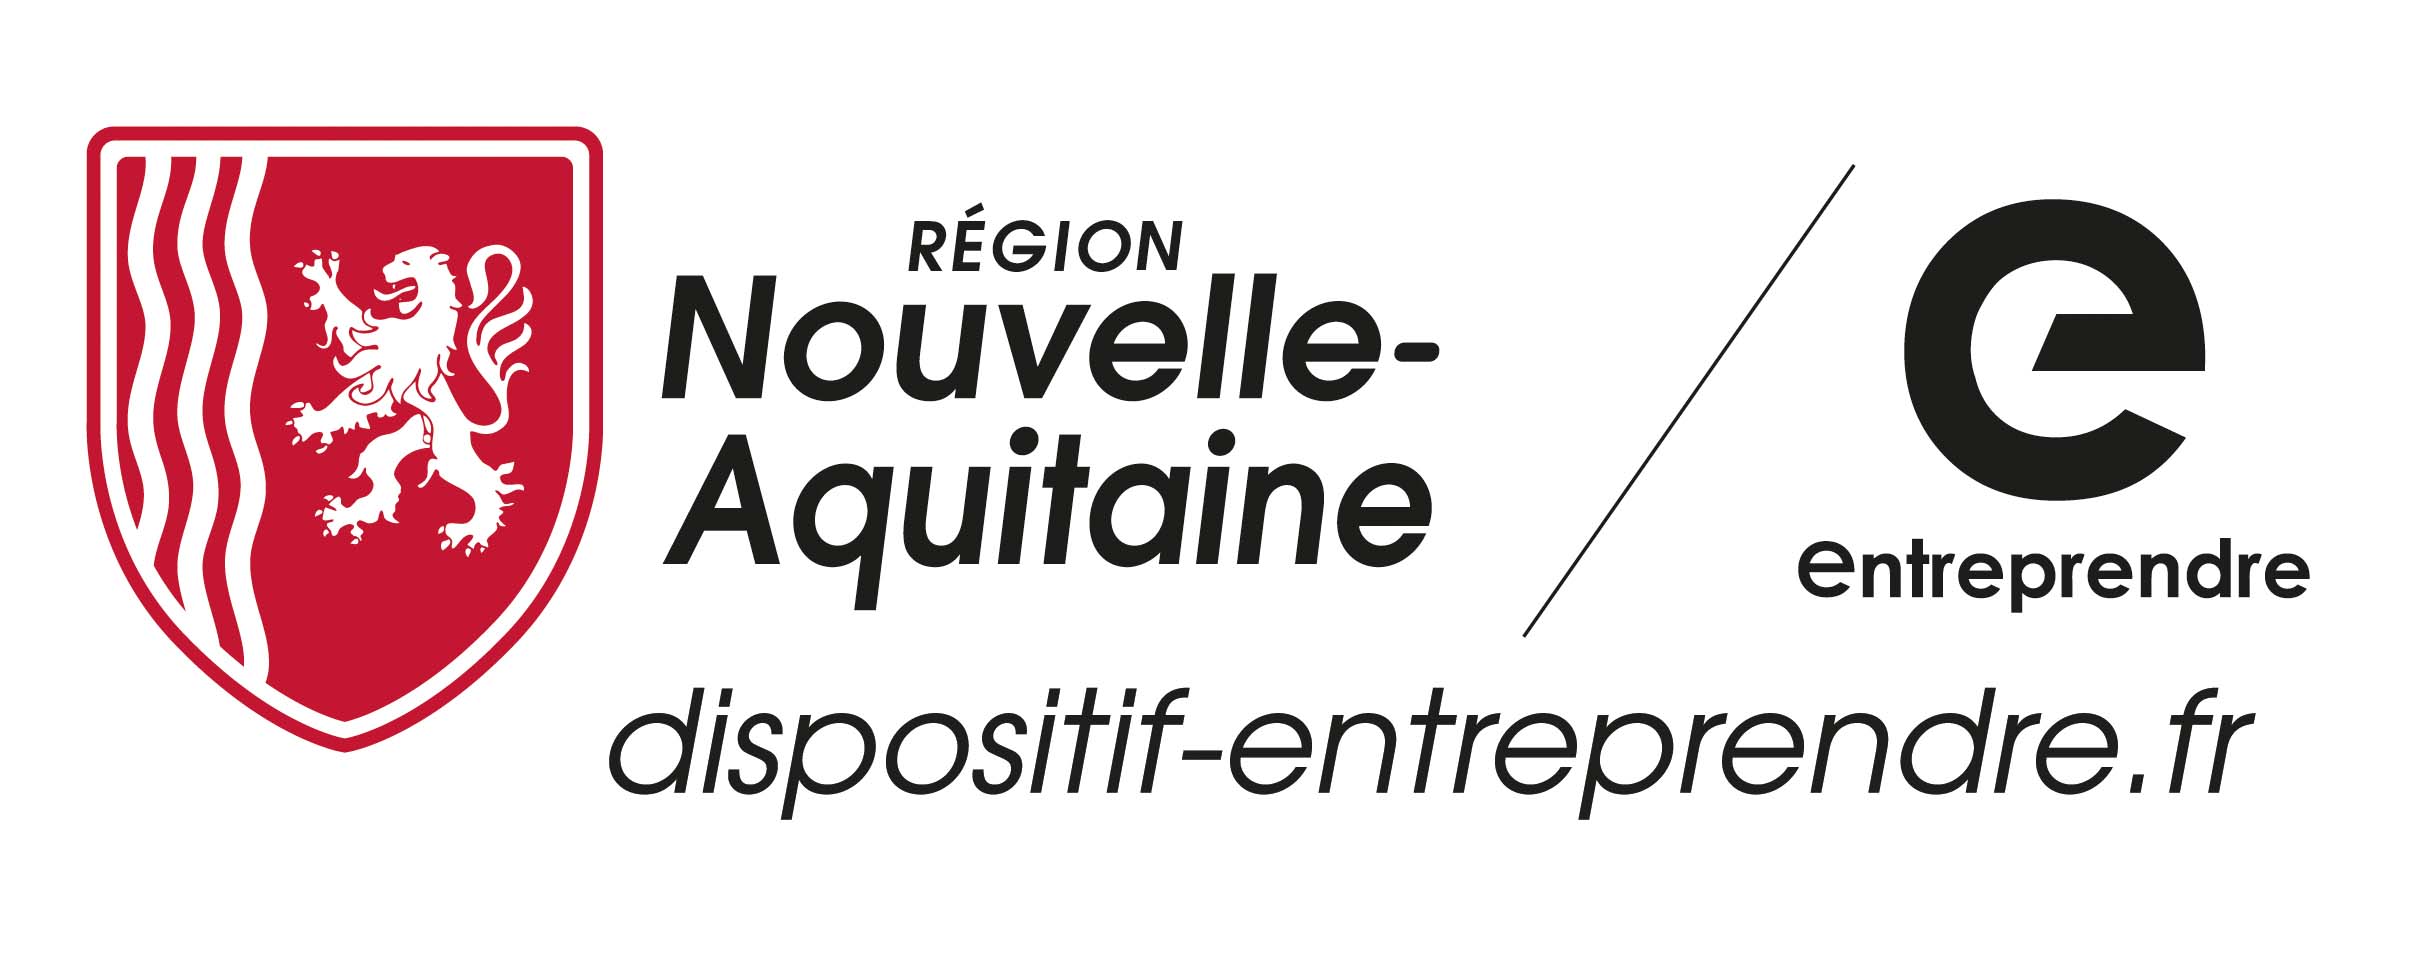 Dispositif entreprendre - Nouvelle Aquitaine